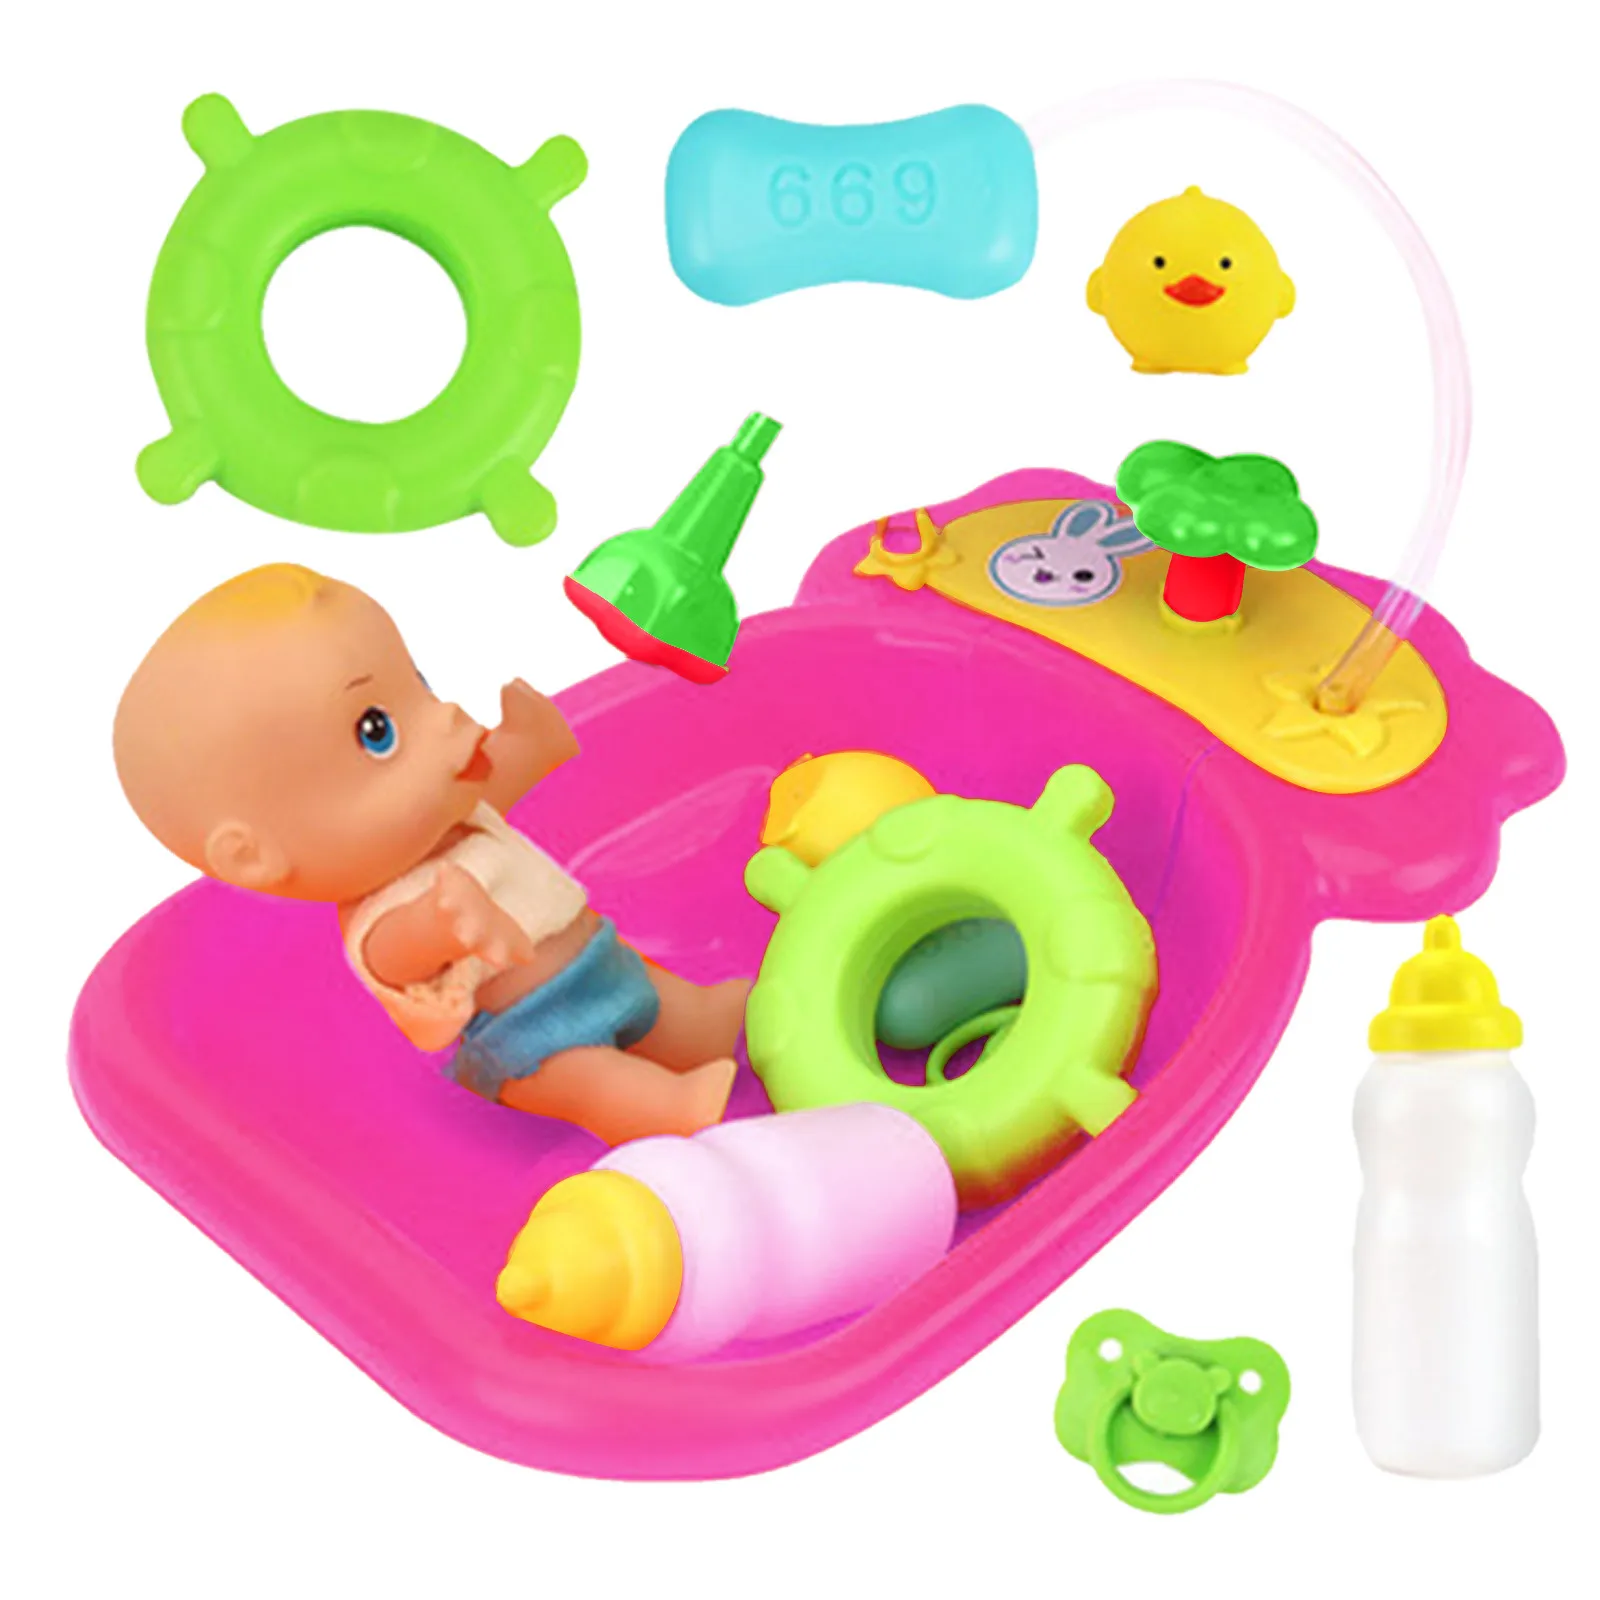 set-di-bambole-per-vasca-da-bagno-in-plastica-per-bambini-gioco-di-ruolo-finto-con-accessori-per-la-doccia-bambola-da-bagno-per-bambina-bambini-con-accessori-giocattolo